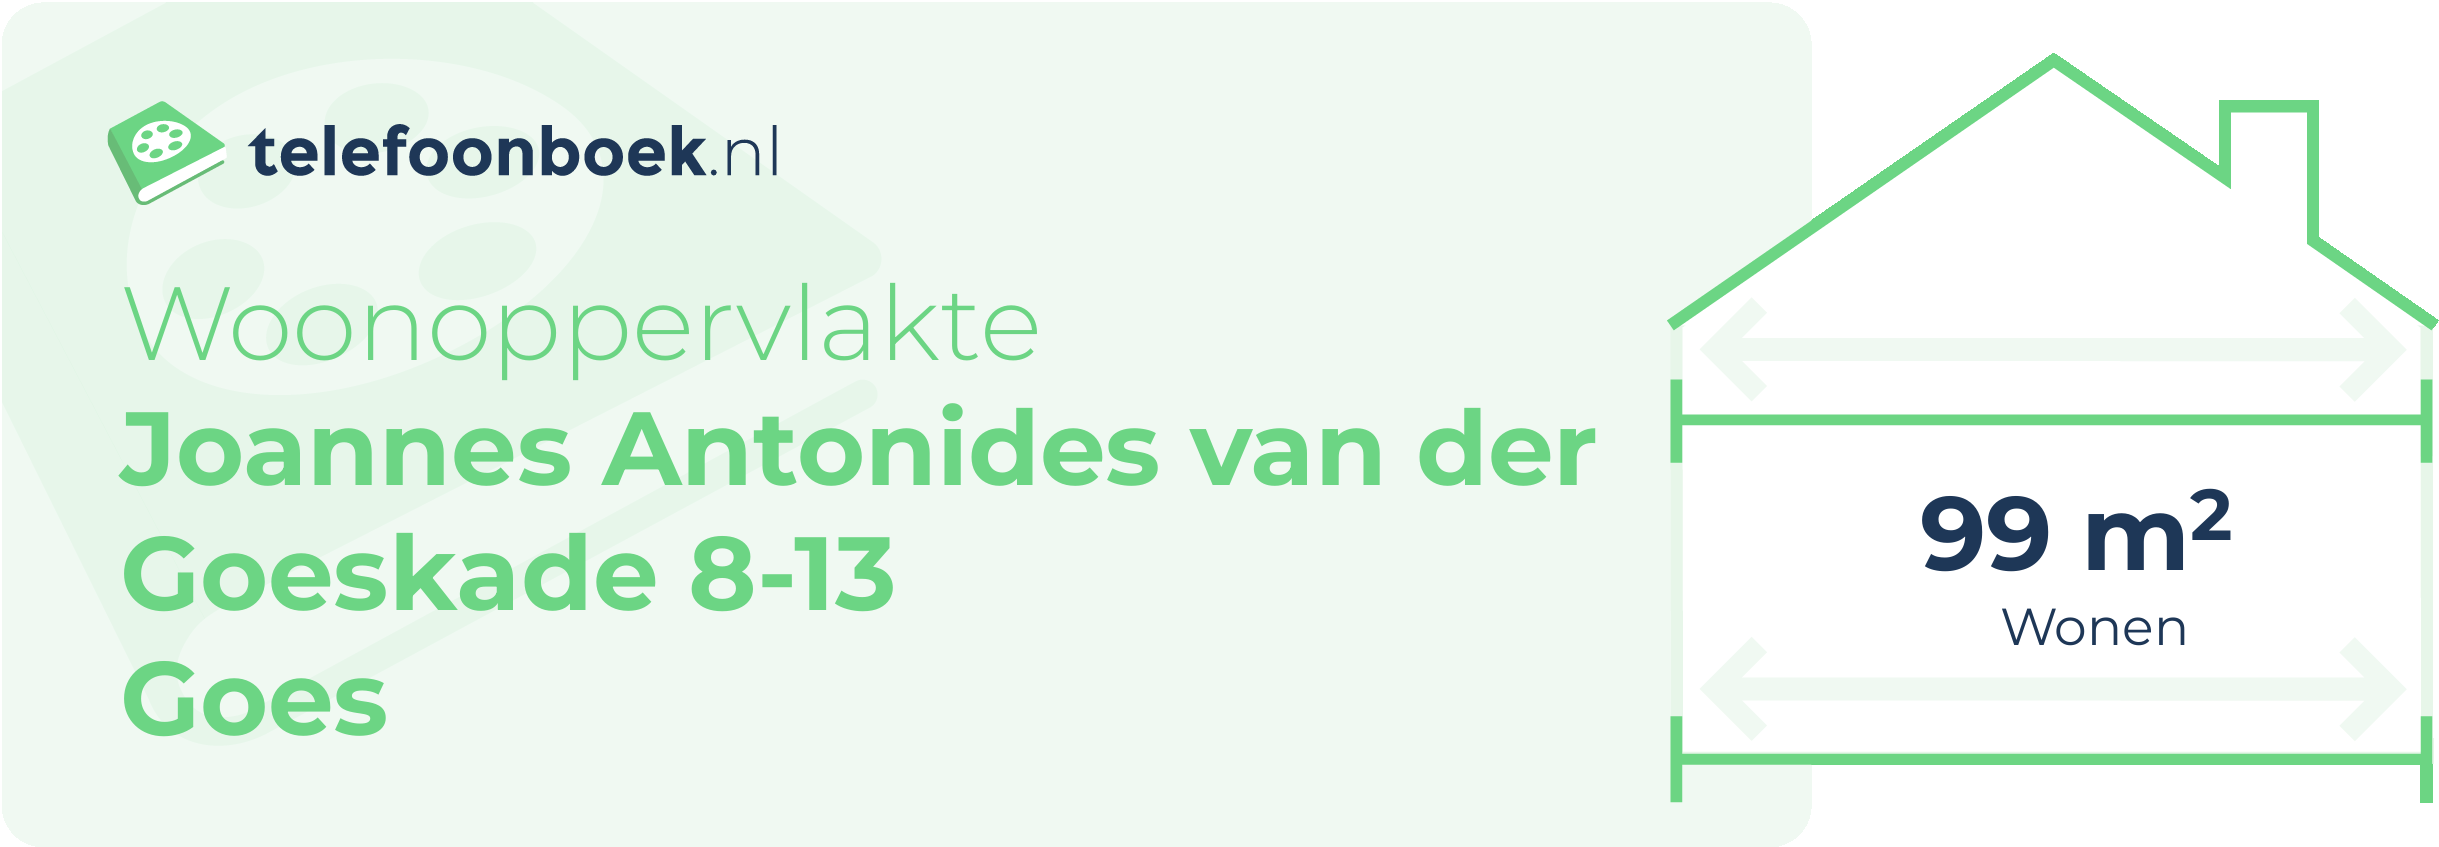 Woonoppervlakte Joannes Antonides Van Der Goeskade 8-13 Goes